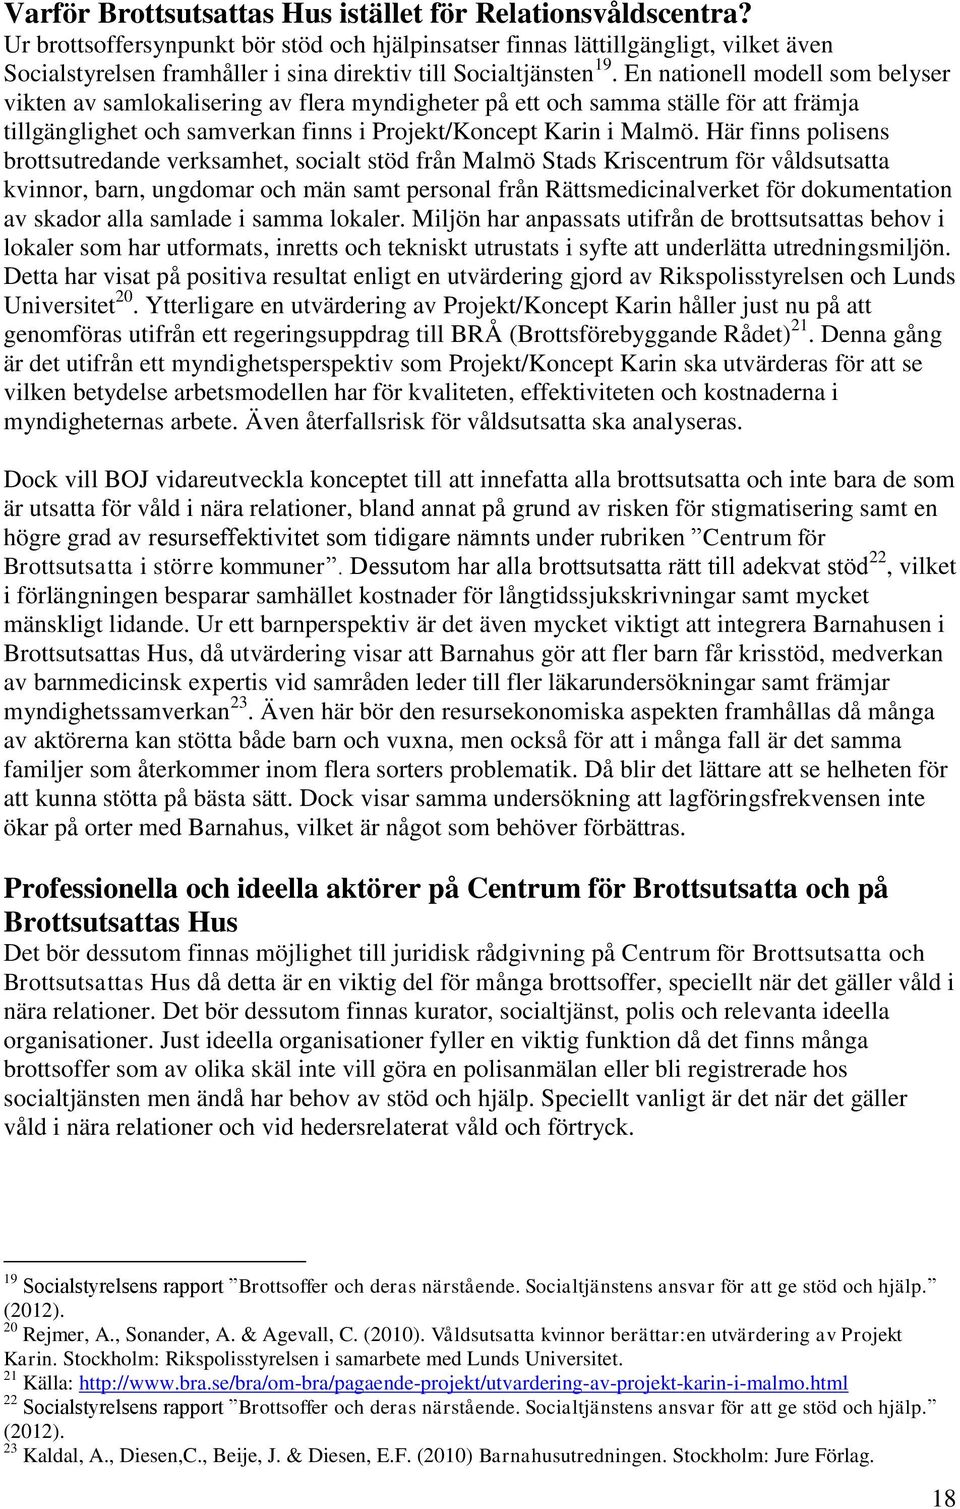 En nationell modell som belyser vikten av samlokalisering av flera myndigheter på ett och samma ställe för att främja tillgänglighet och samverkan finns i Projekt/Koncept Karin i Malmö.